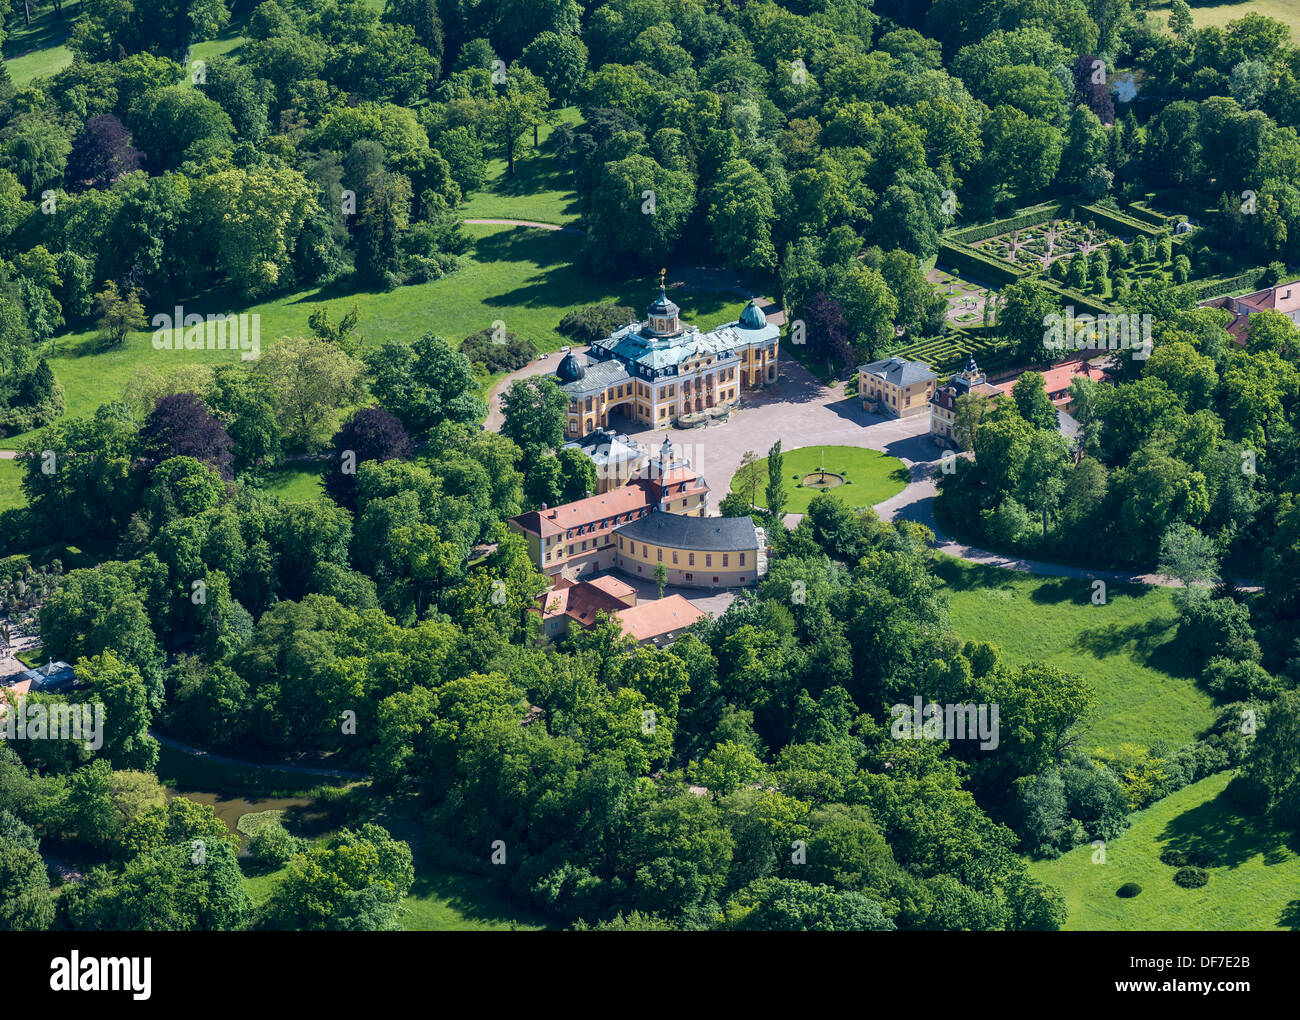 Schloss Belvedere il Palazzo ed il parco, dichiarato patrimonio culturale mondiale dall'UNESCO, vista aerea, Weimar, Turingia, Germania Foto Stock